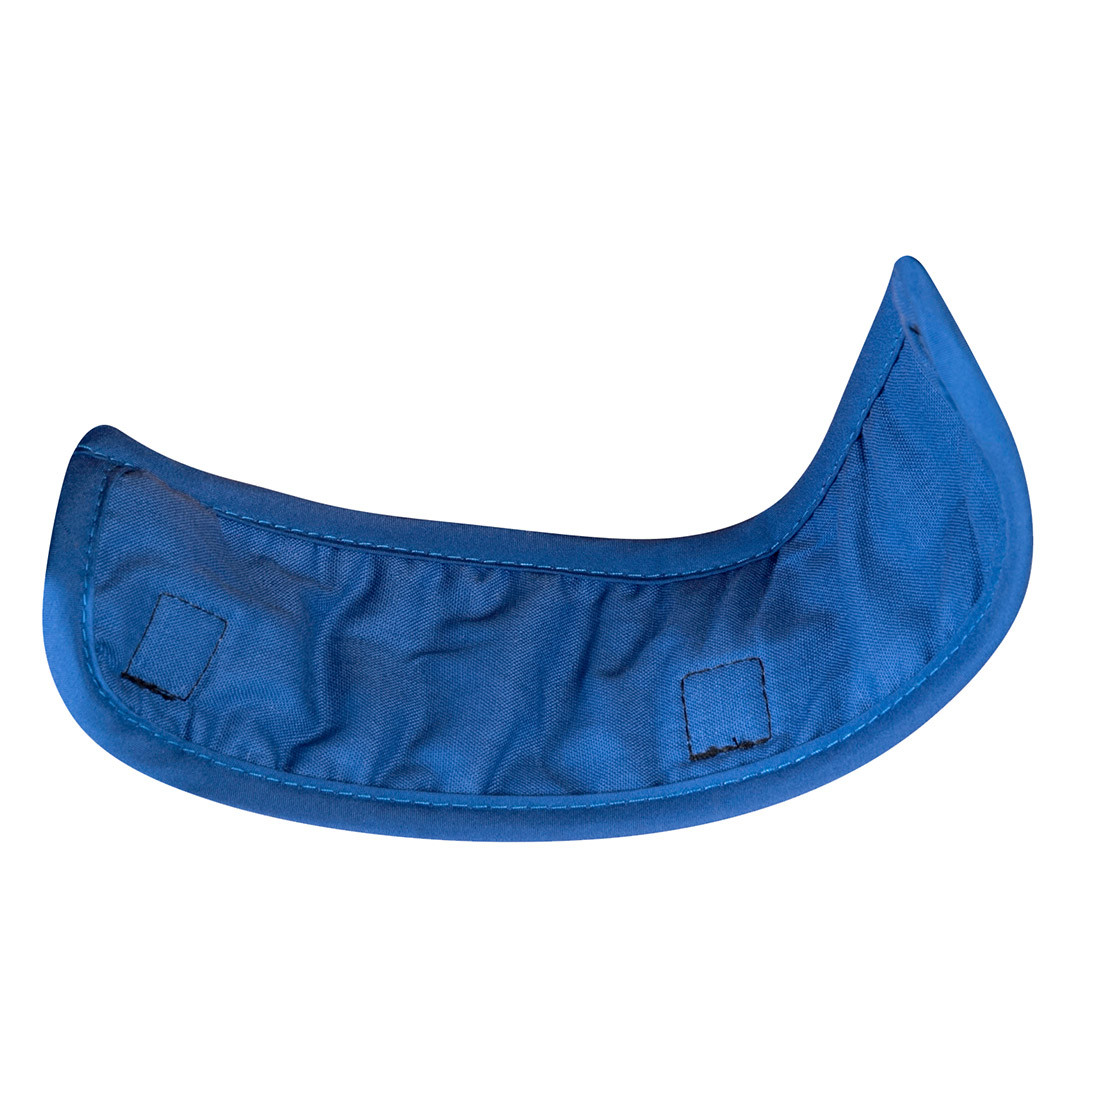 Banda refrescante para el casco - Equipamientos de protección personal